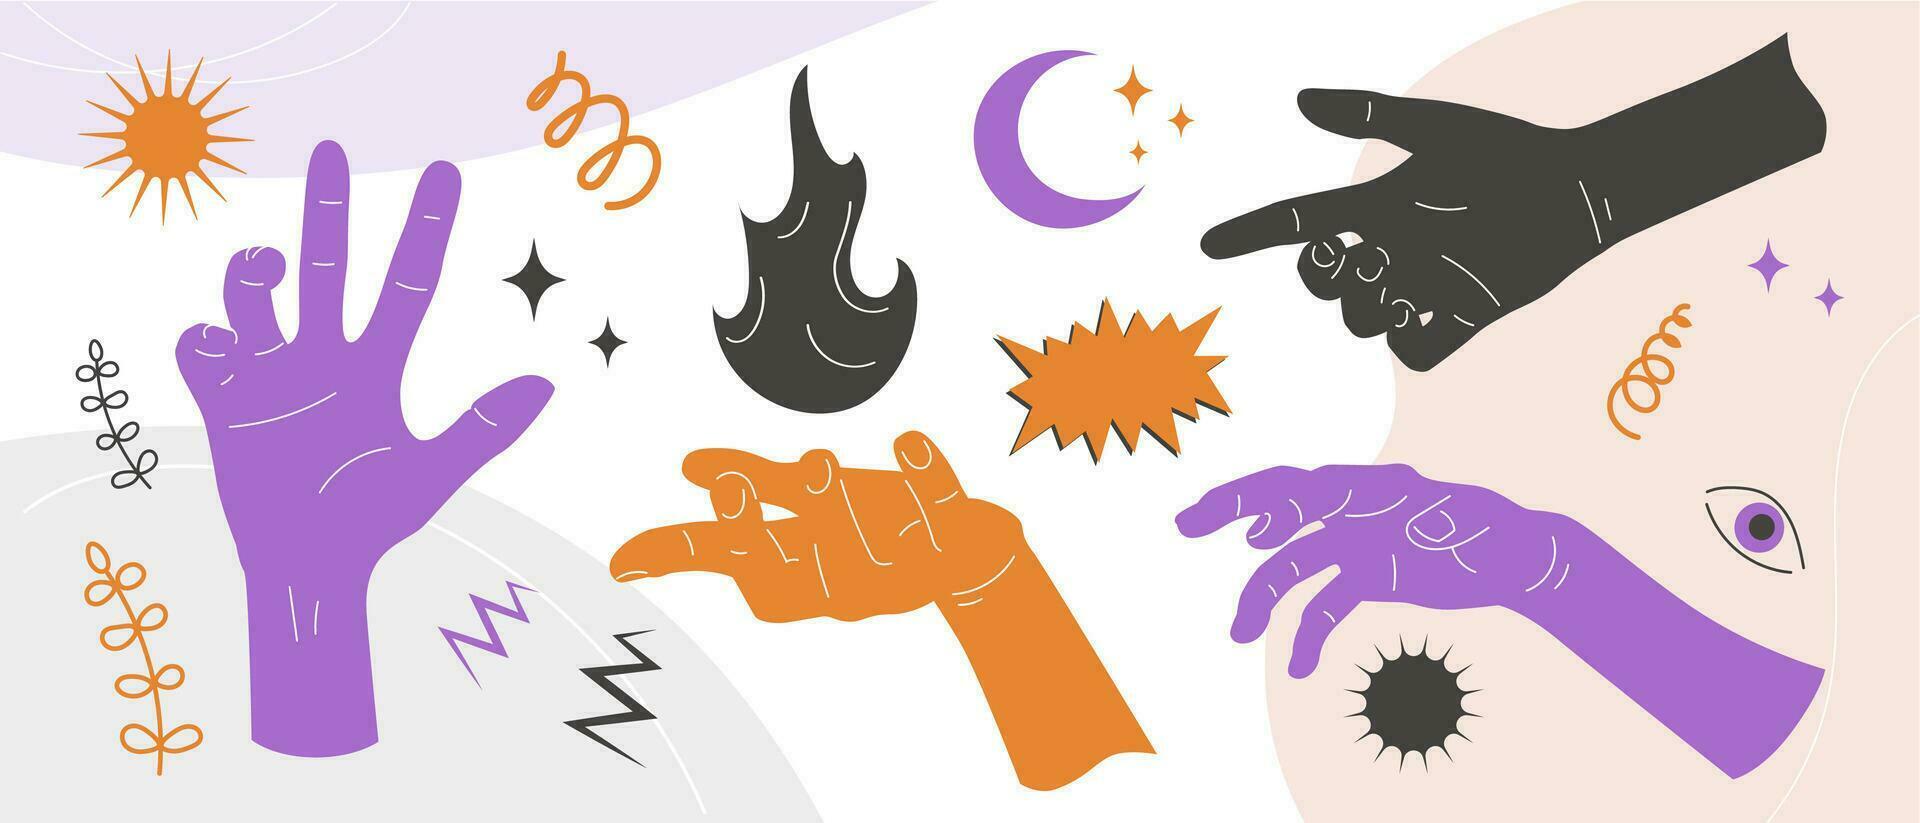 Mensch Hand Silhouetten, Mystiker abstrakt Banner, retro Collage mit Hand Gesten und magisch Zeichnungen von Feuer, Mond, Sonne und Sterne. Vektor Kunst.